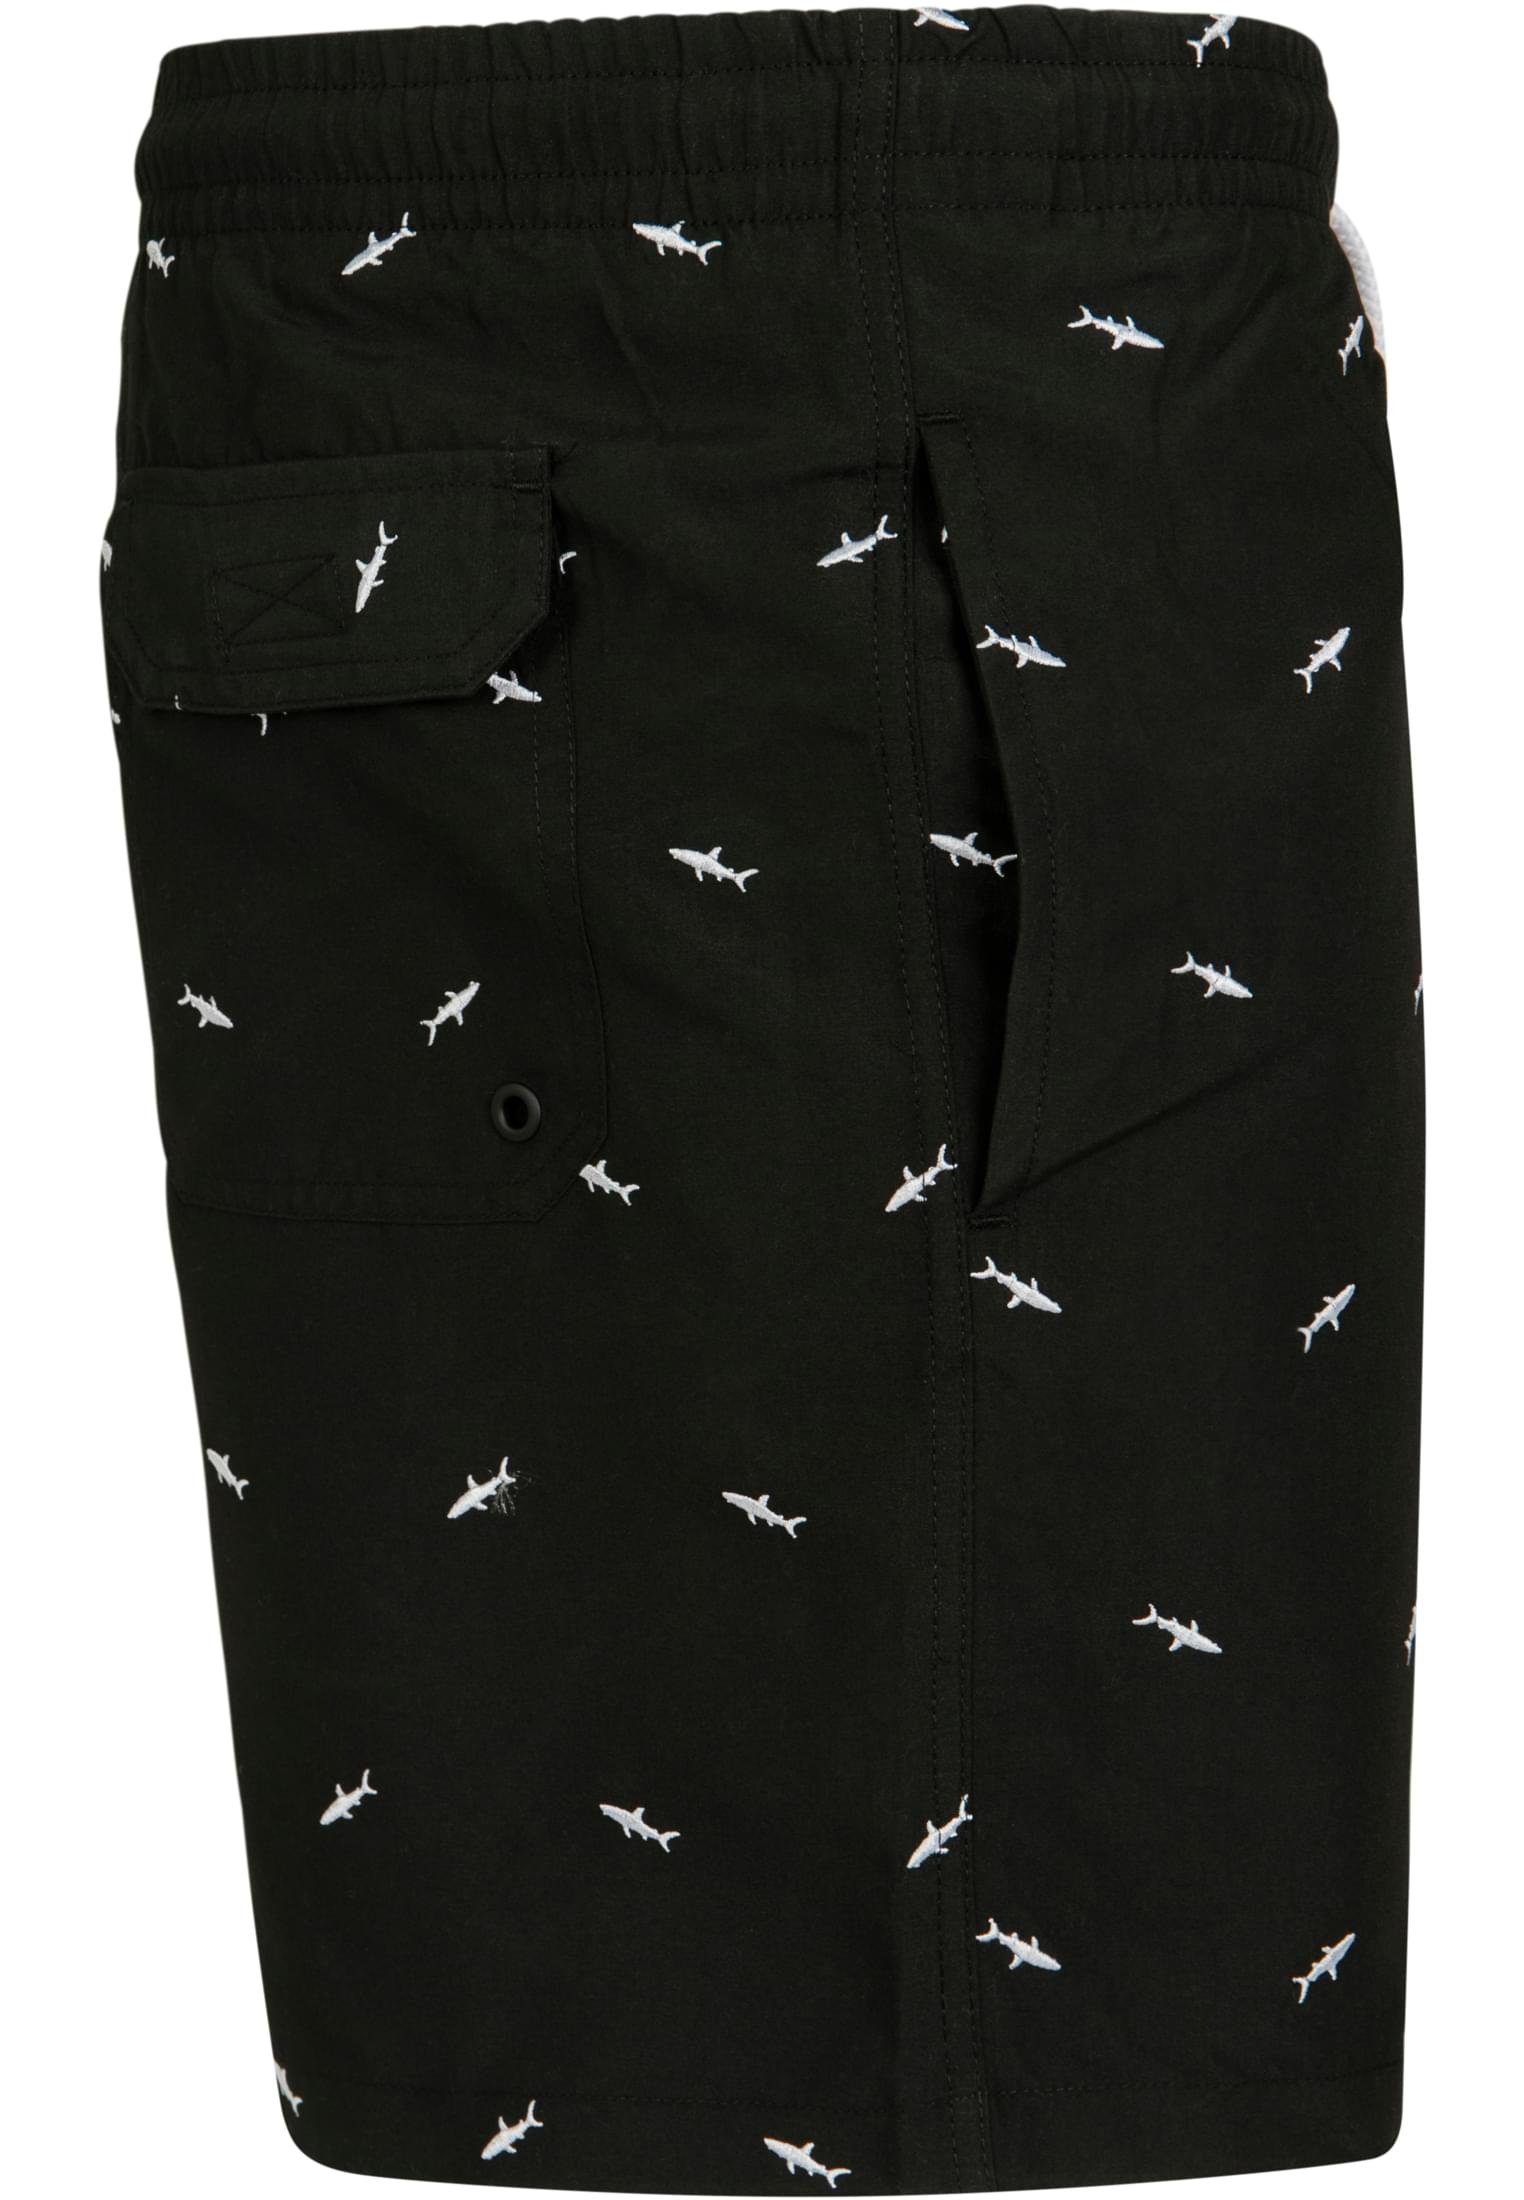 CLASSICS Swim URBAN Badeshorts Shorts Herren shark/black/white Embroidery